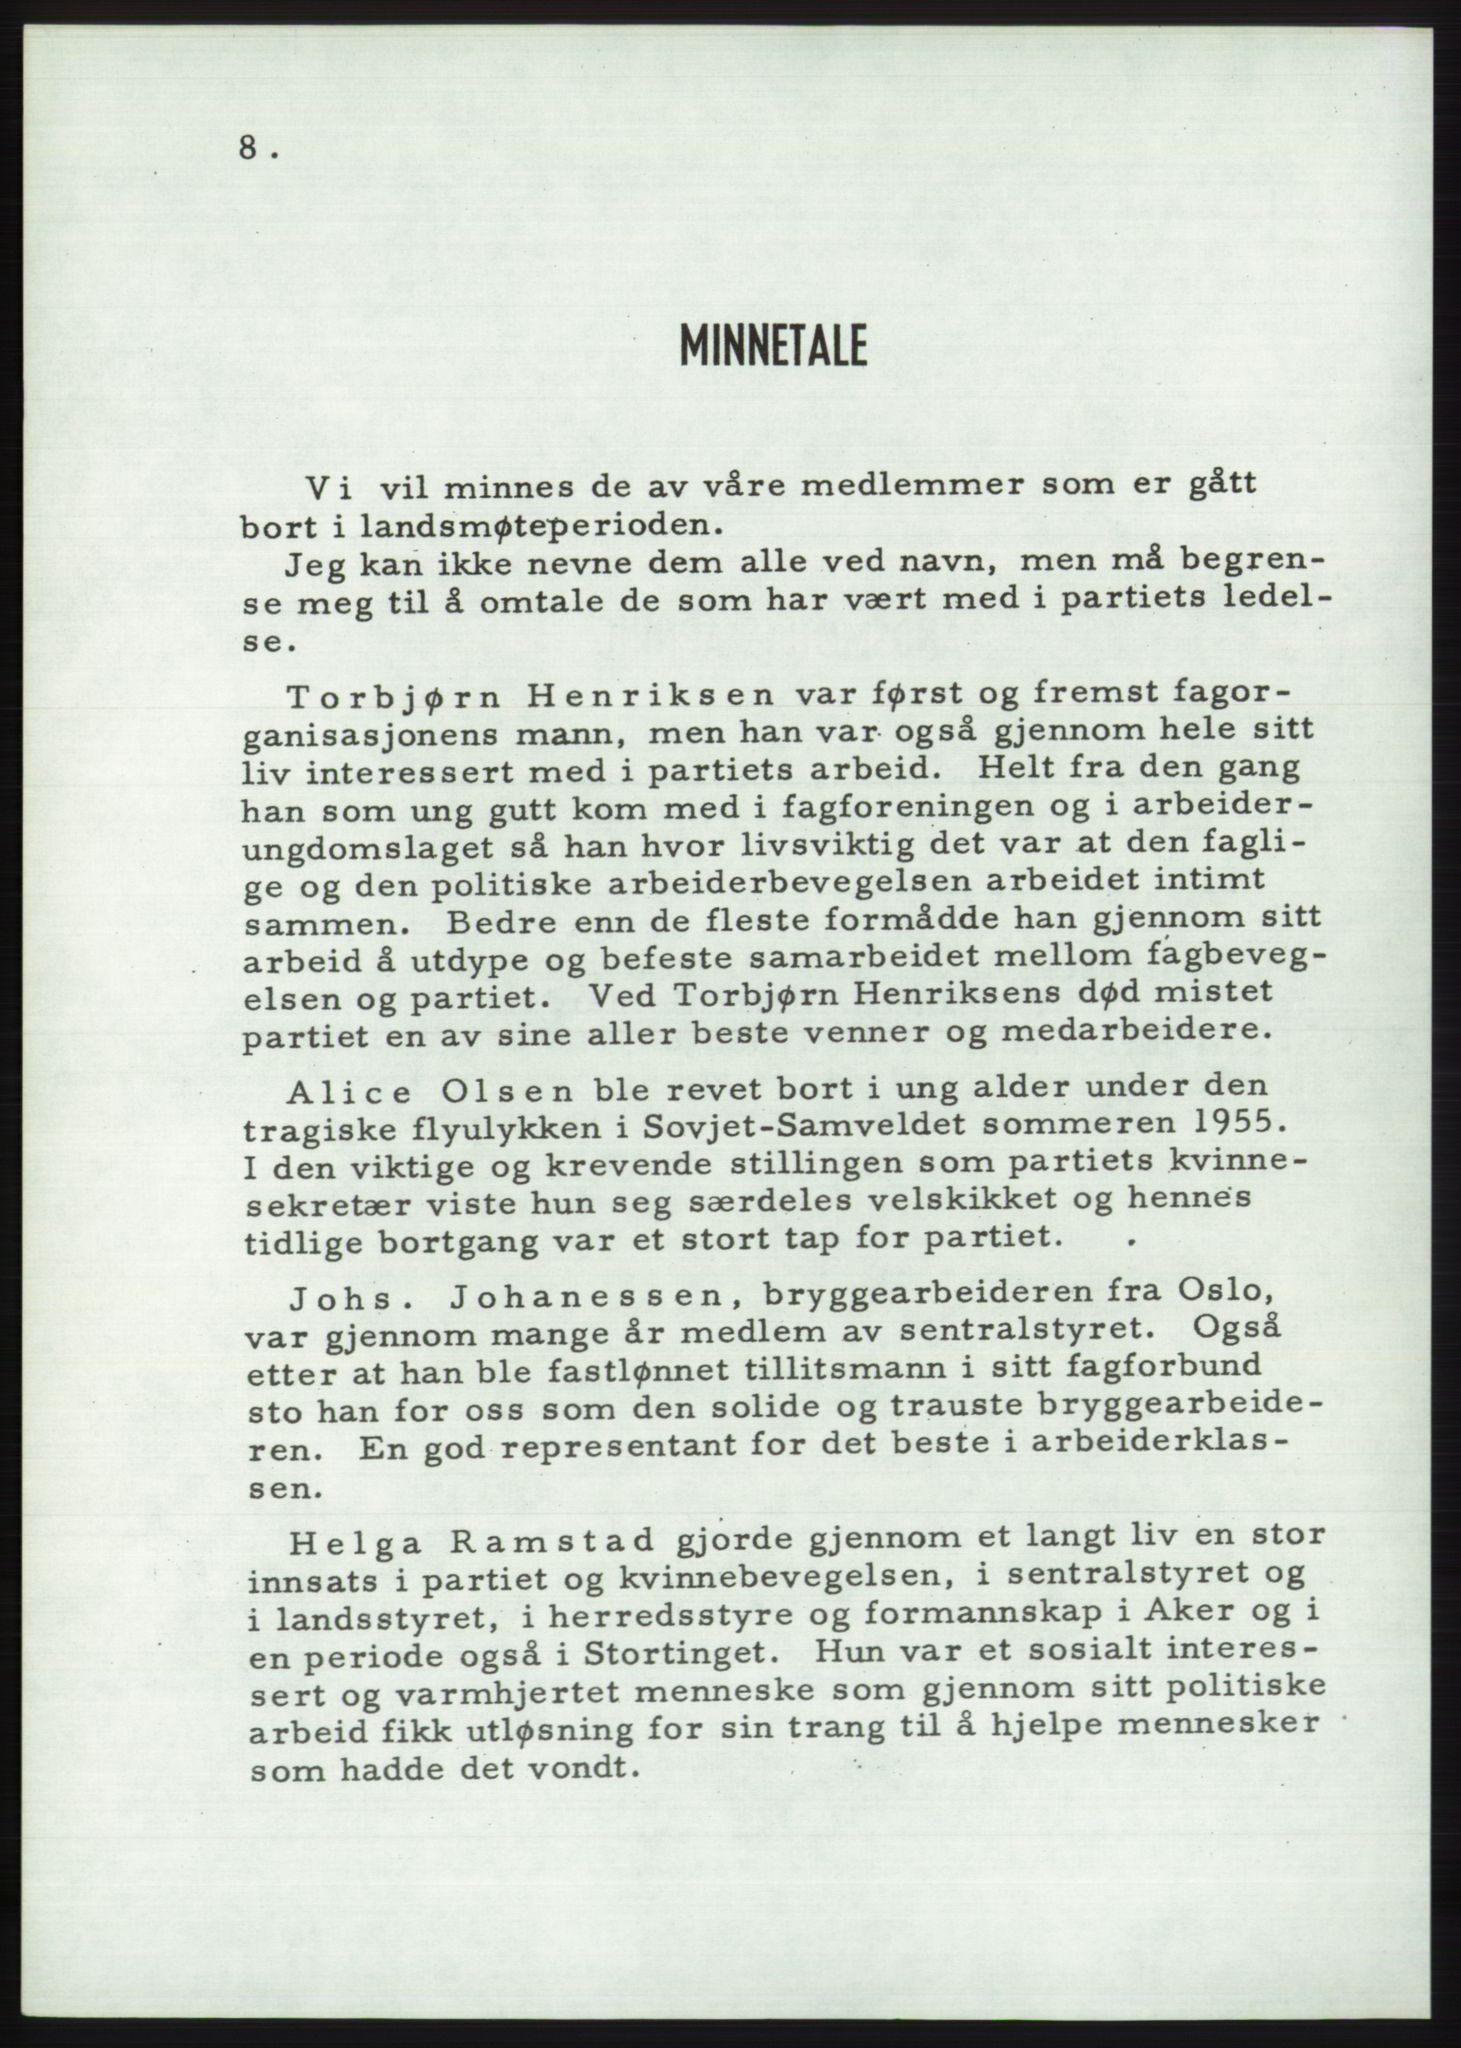 Det norske Arbeiderparti - publikasjoner, AAB/-/-/-: Protokoll over forhandlingene på det 36. ordinære landsmøte 30.-31. mai og 1. juni 1957 i Oslo, 1957, p. 8